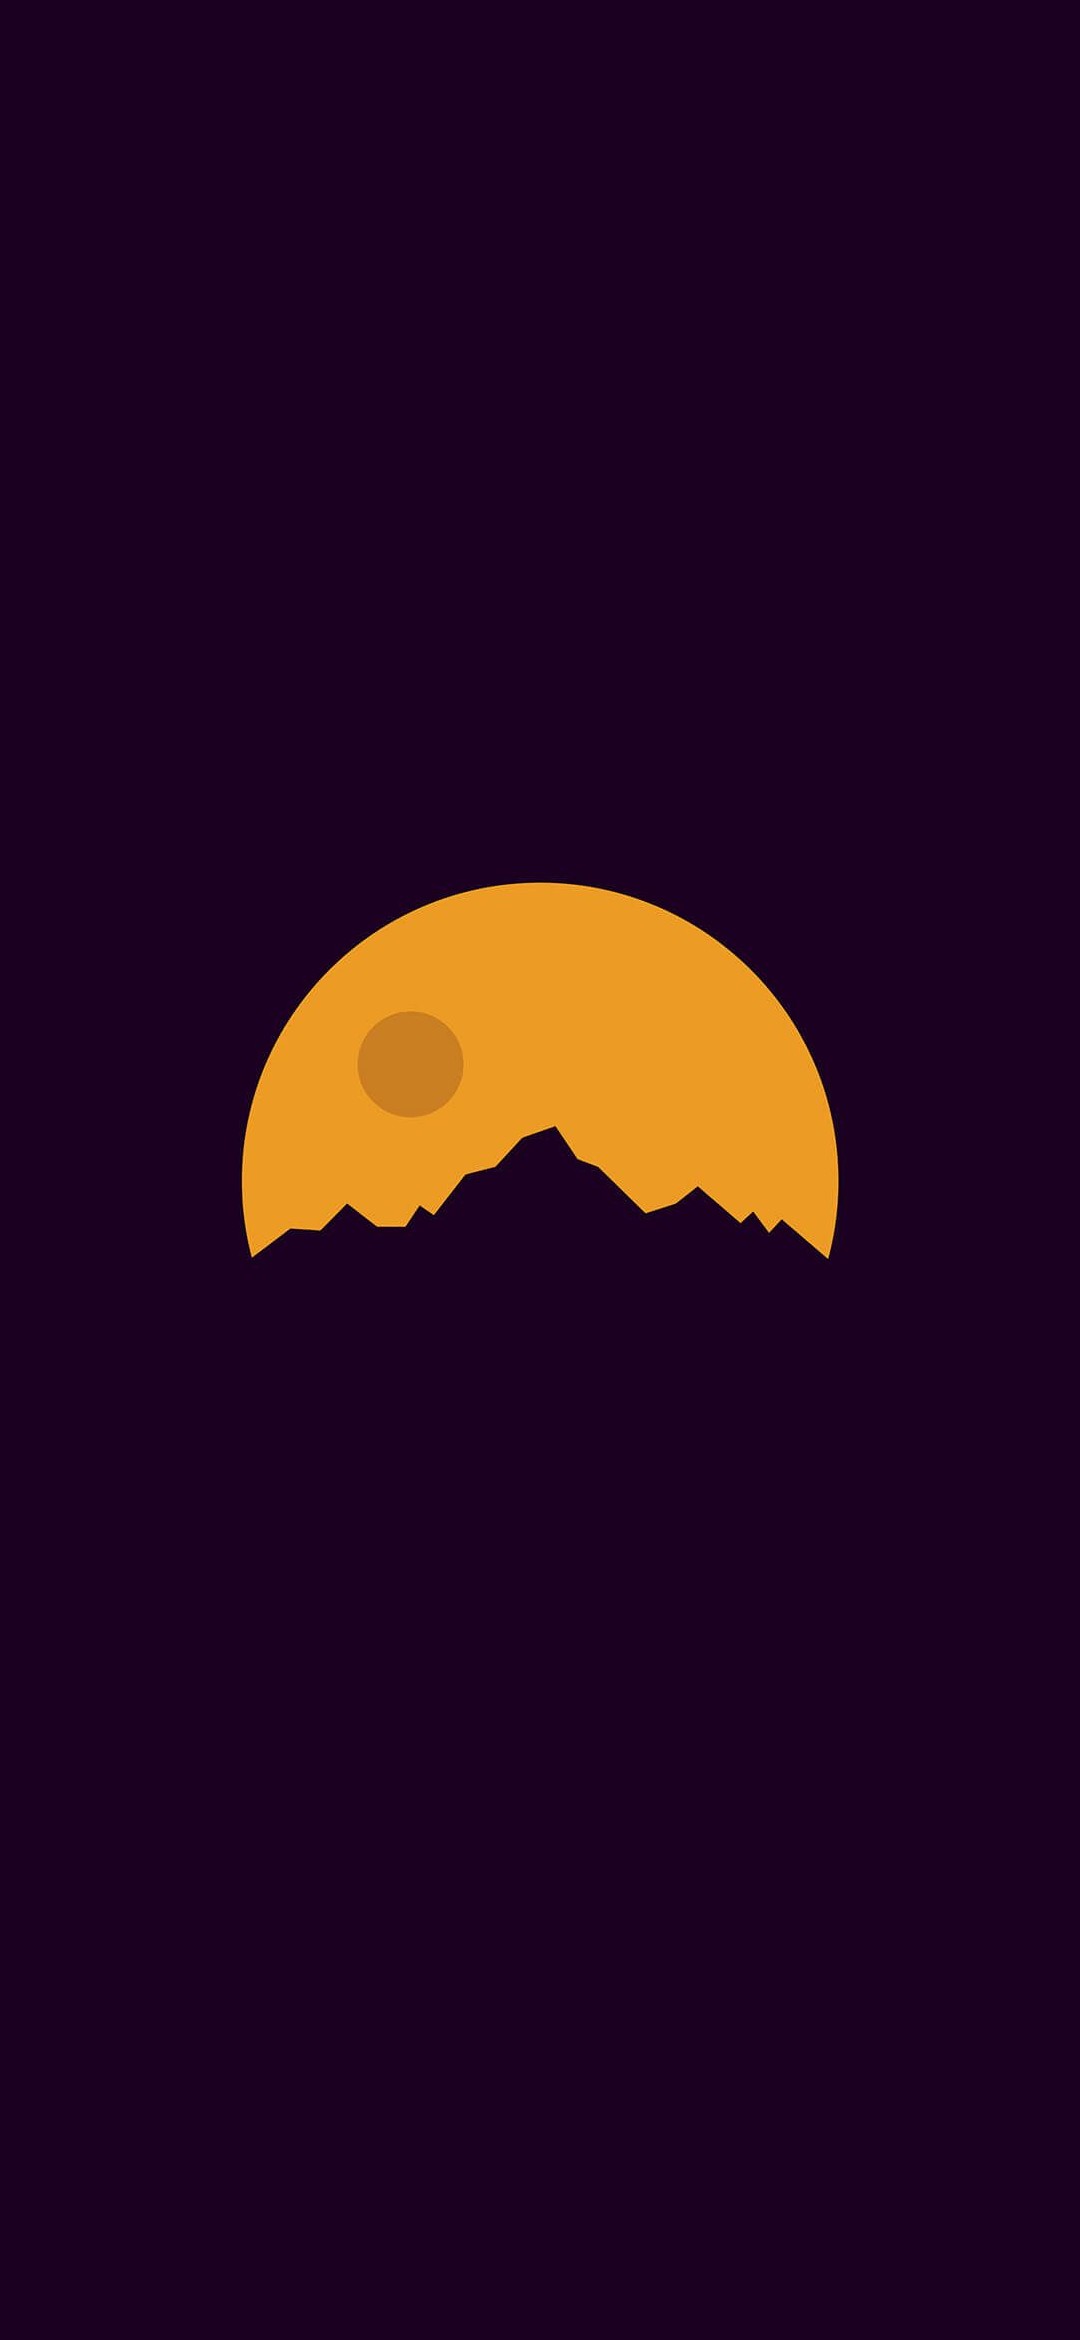 シンプルな紫の山と黄色い満月のイラスト Redmi 9t Android 壁紙 待ち受け Sumaran